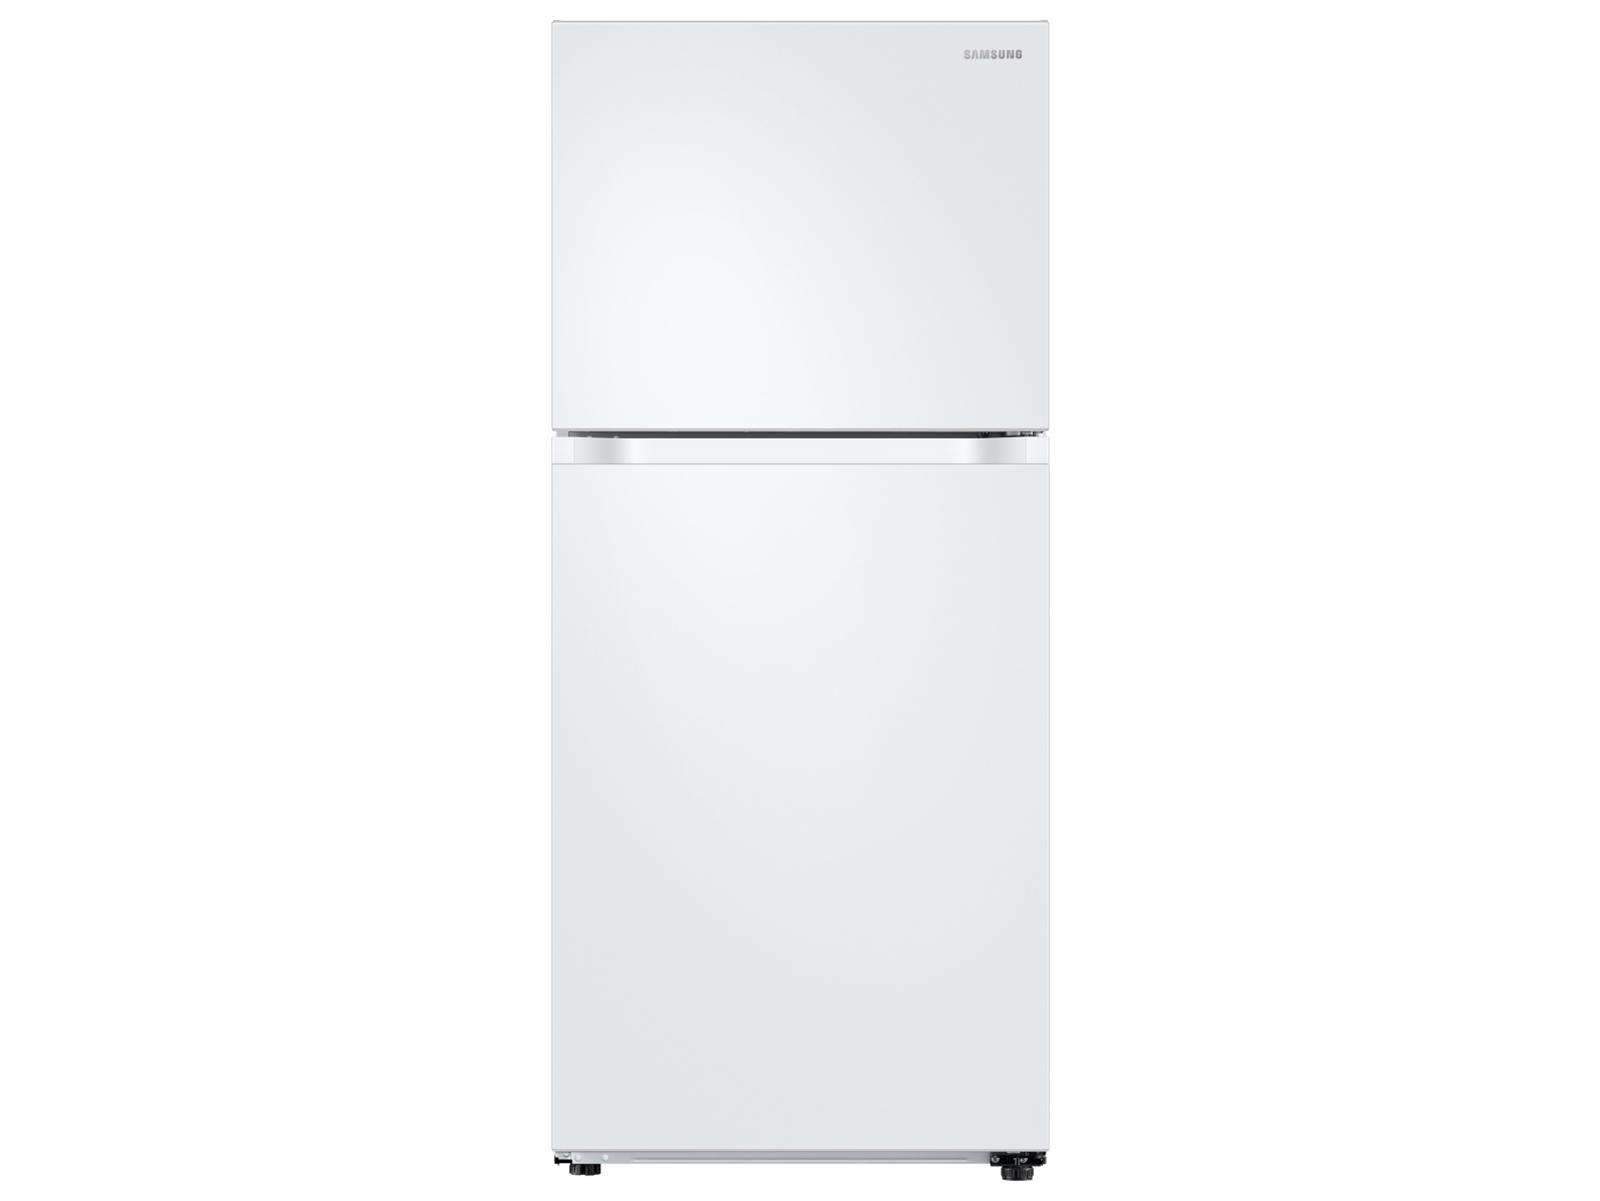 Divertidísimo valor social Blanco 18 cu. ft. Refrigerador congelador superior con FlexZone | Samsung  EE.UU.